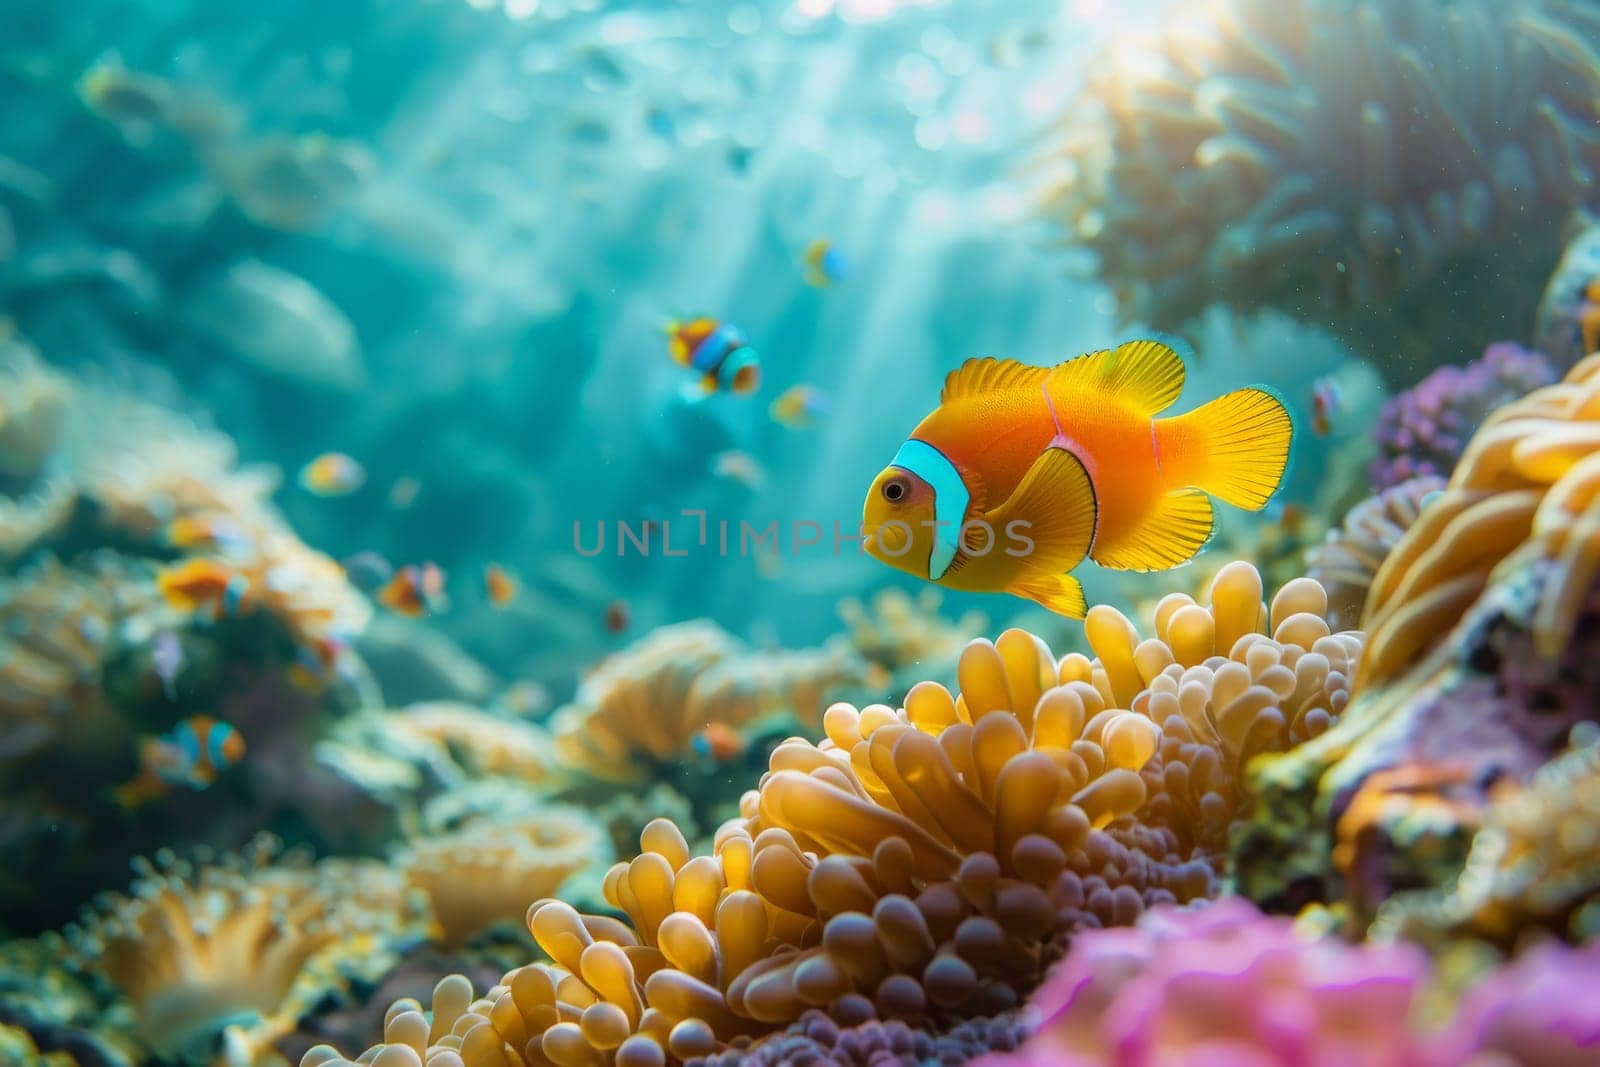 Captivating images of marine life, marine life ecosystem, Underwater image background by nijieimu